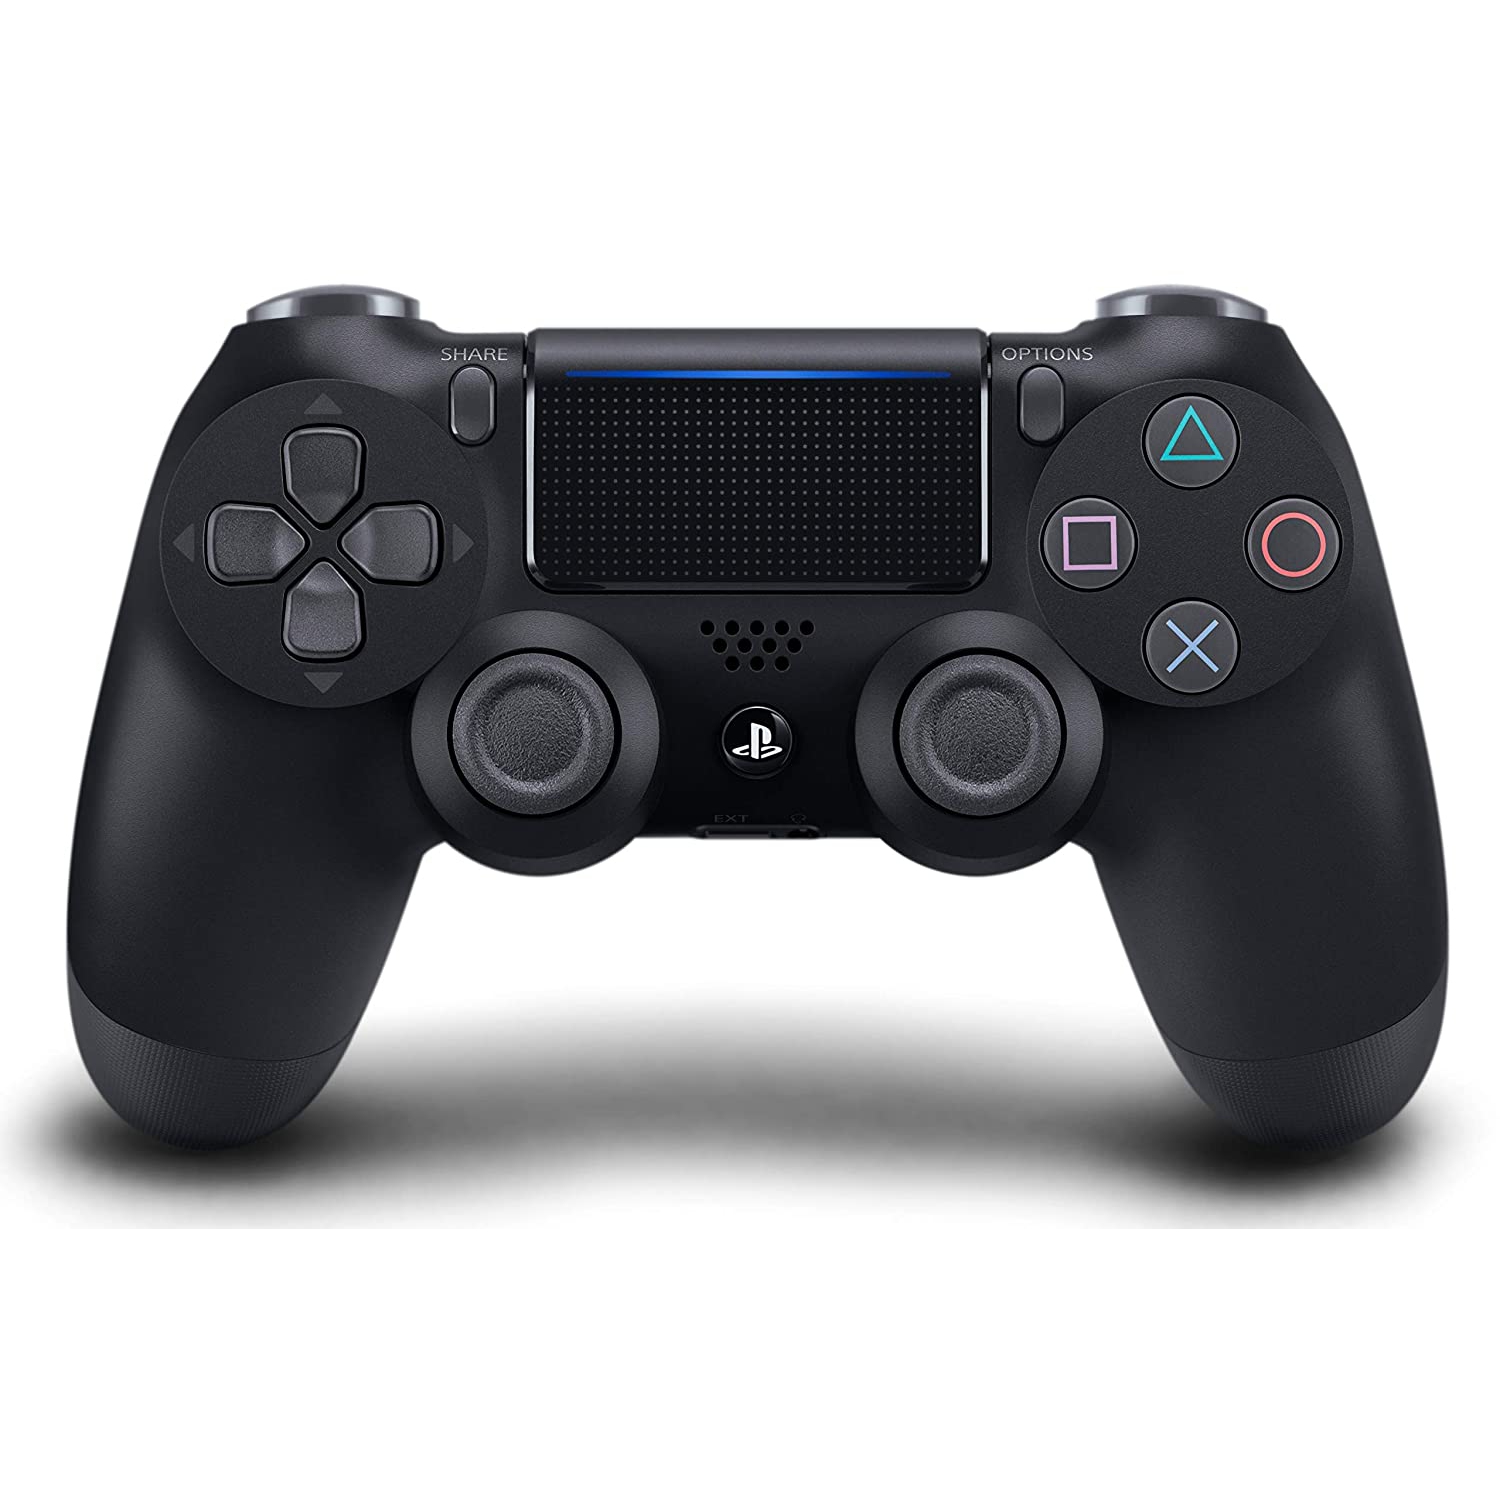 DualShock 4 Wireless Controller for PlayStation 4 - Jet Black - Refurbished